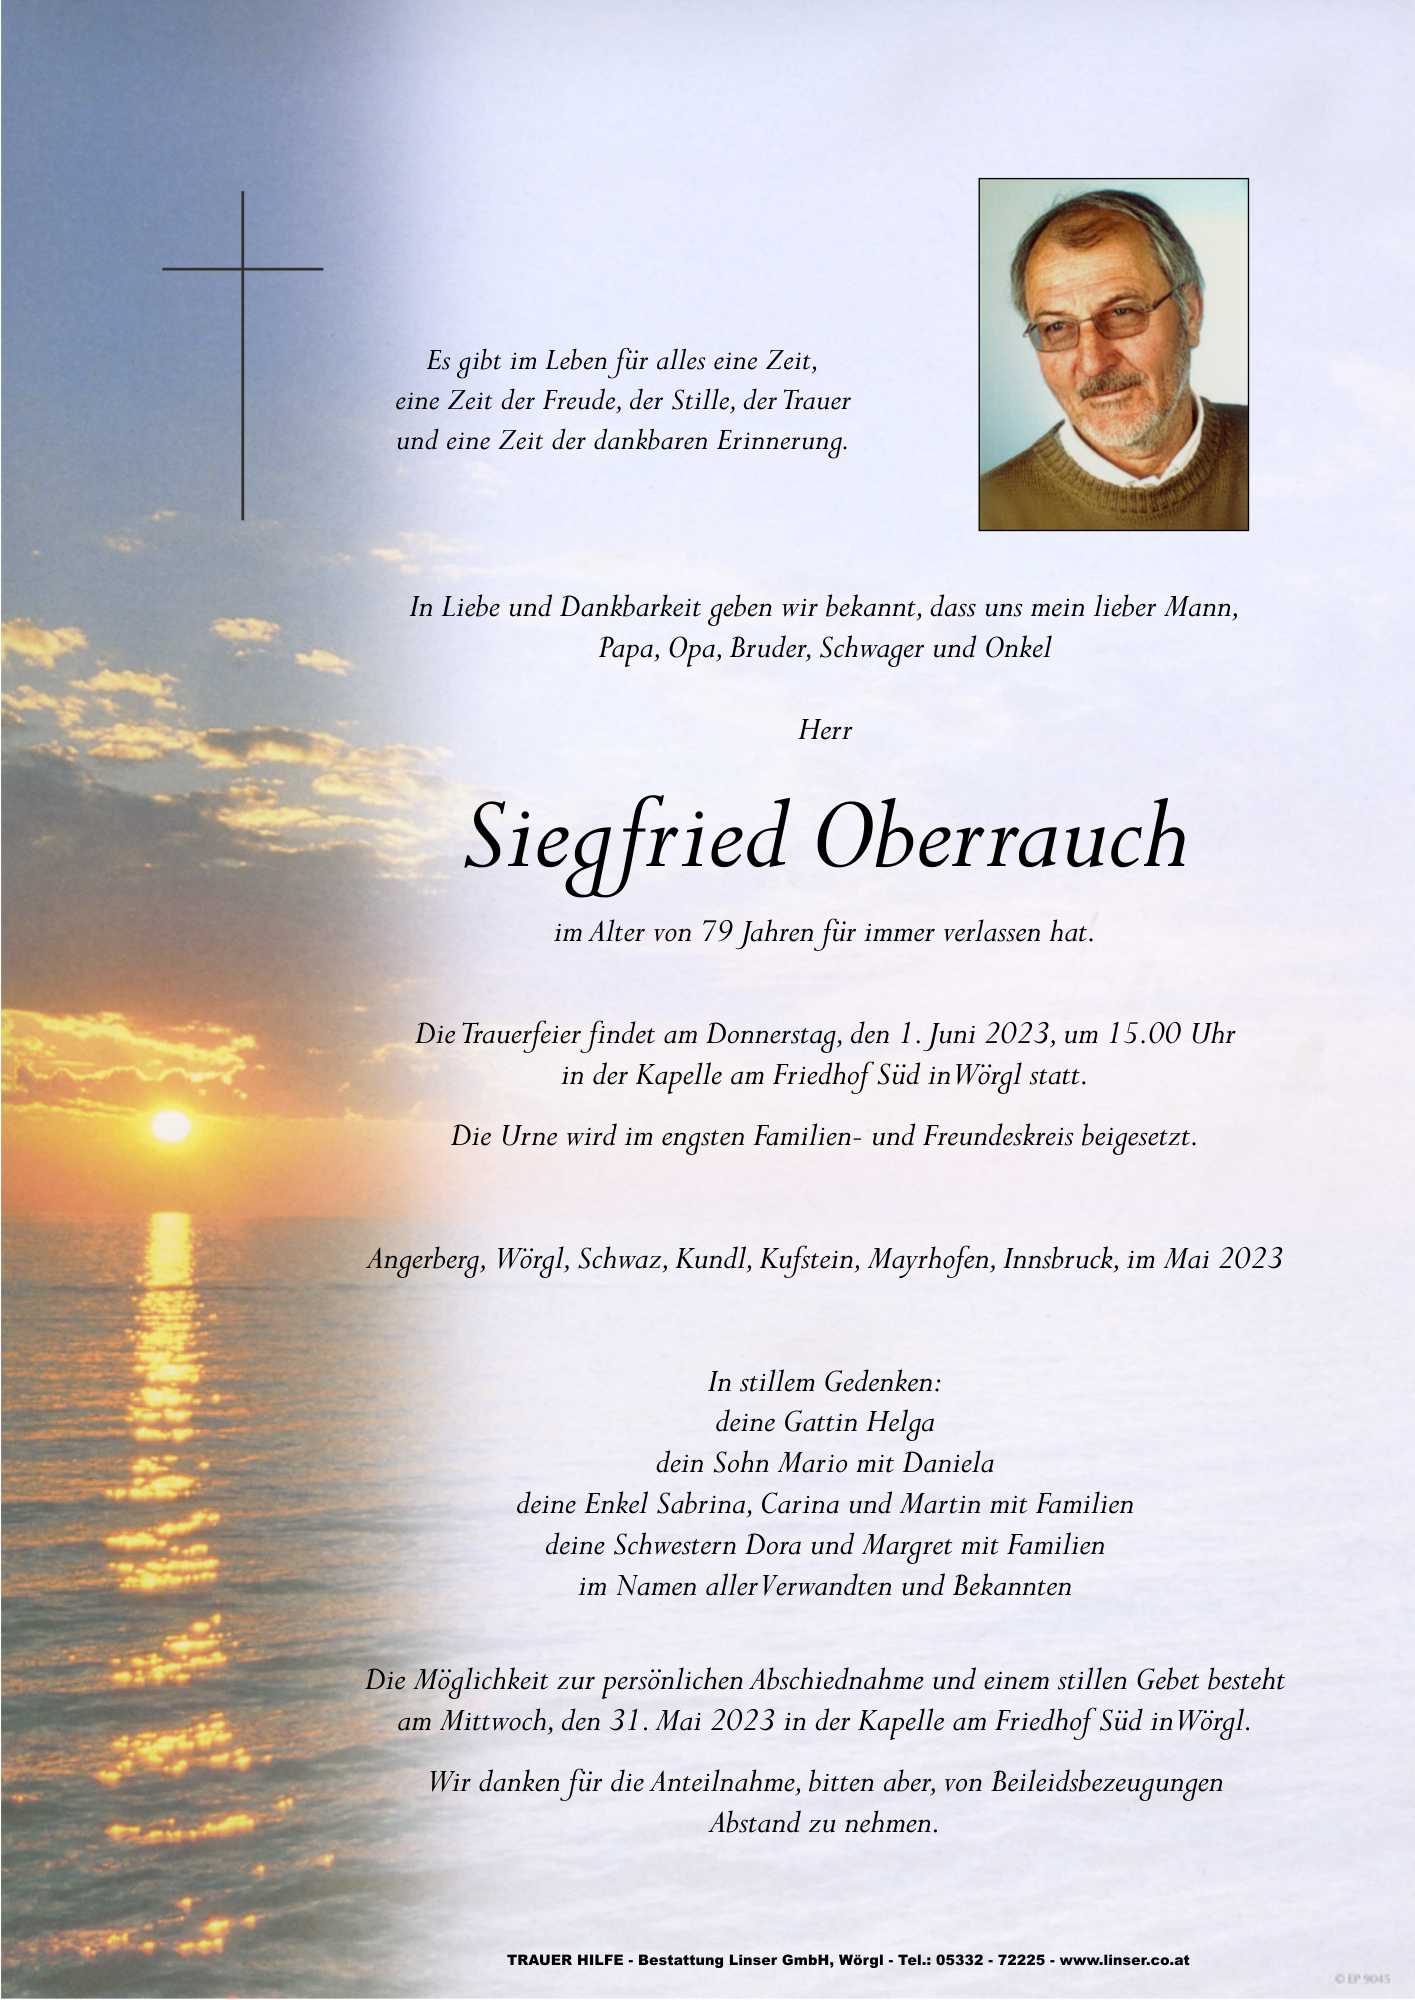 Siegfried Oberauch